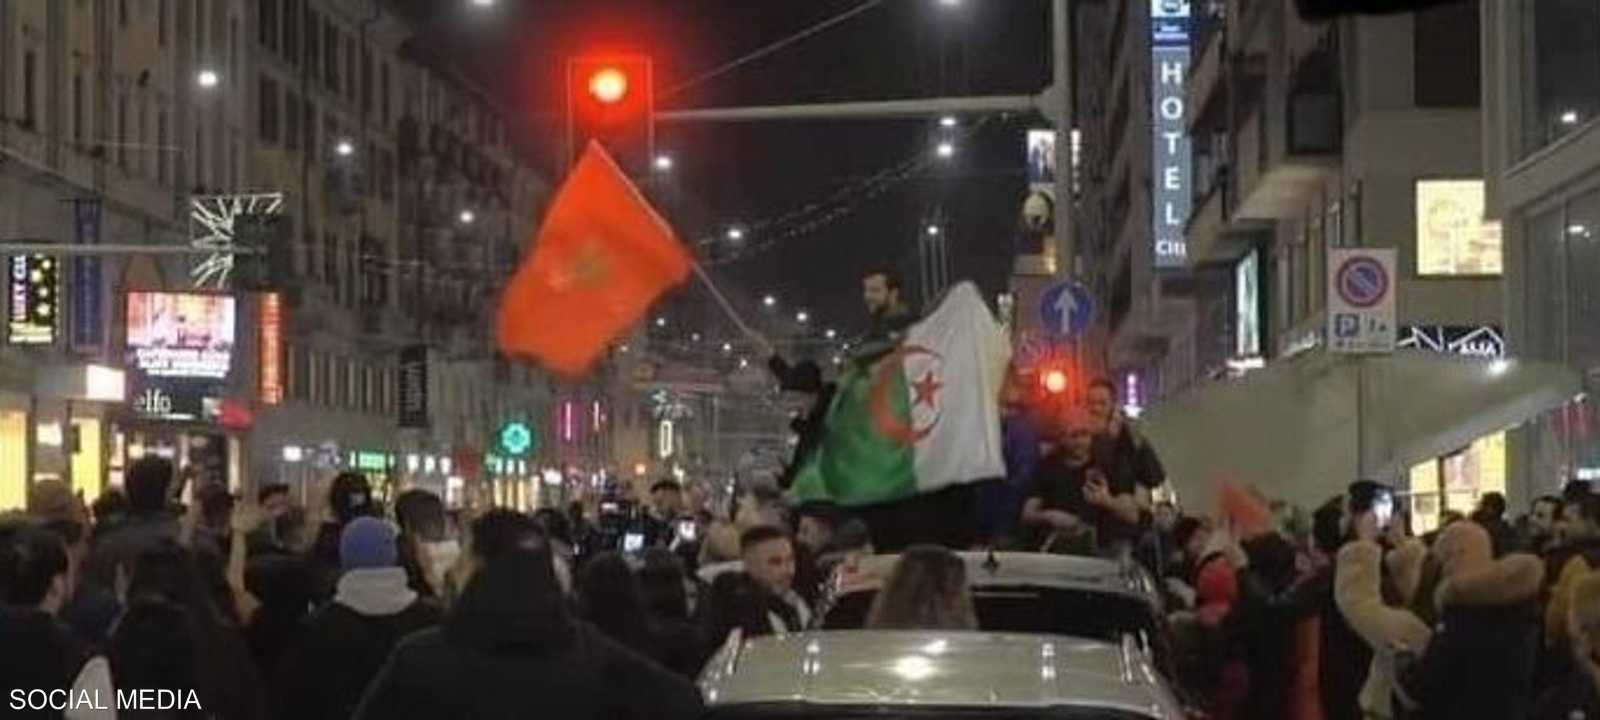 الفرحة بفوز المغرب عمت شوارع الجزائر